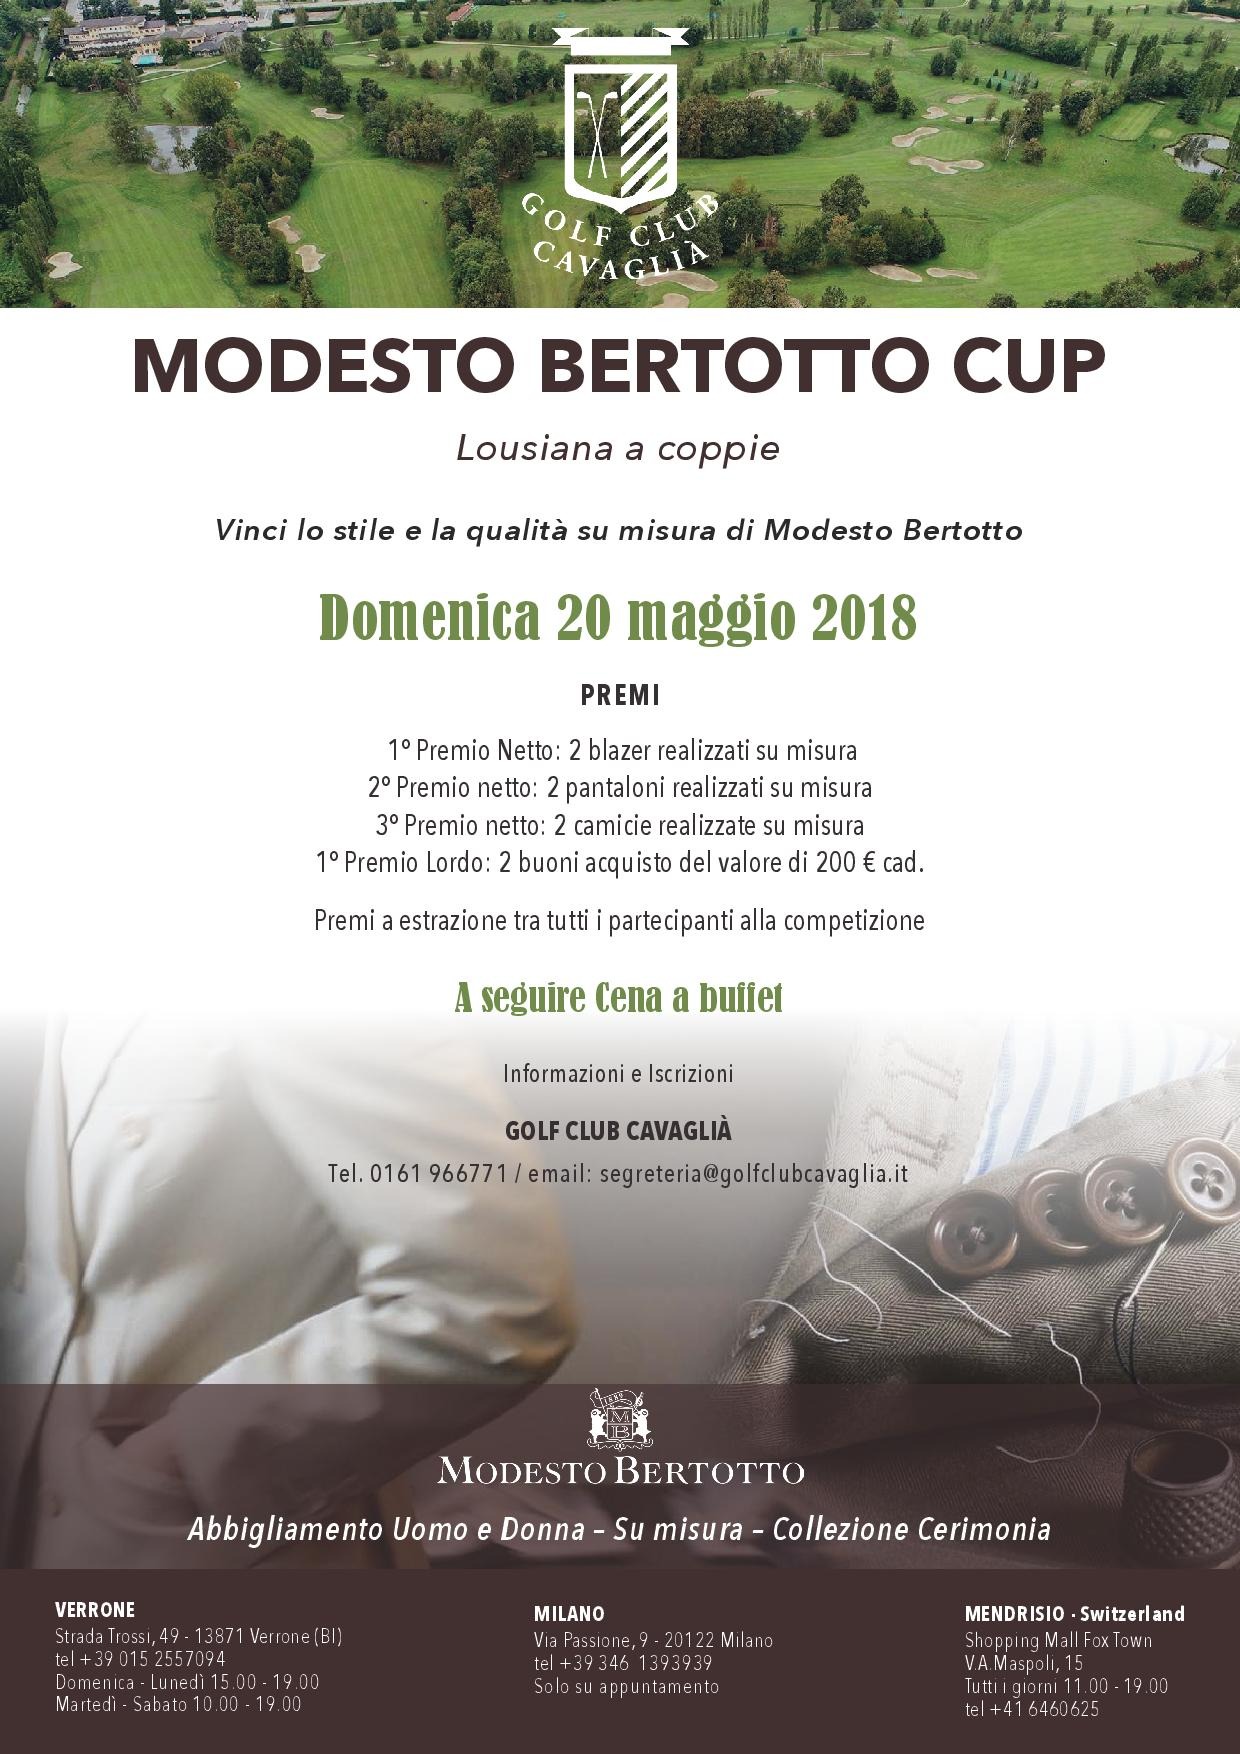 MODESTO BERTOTTO CUP - DOMENICA 20 MAGGIO